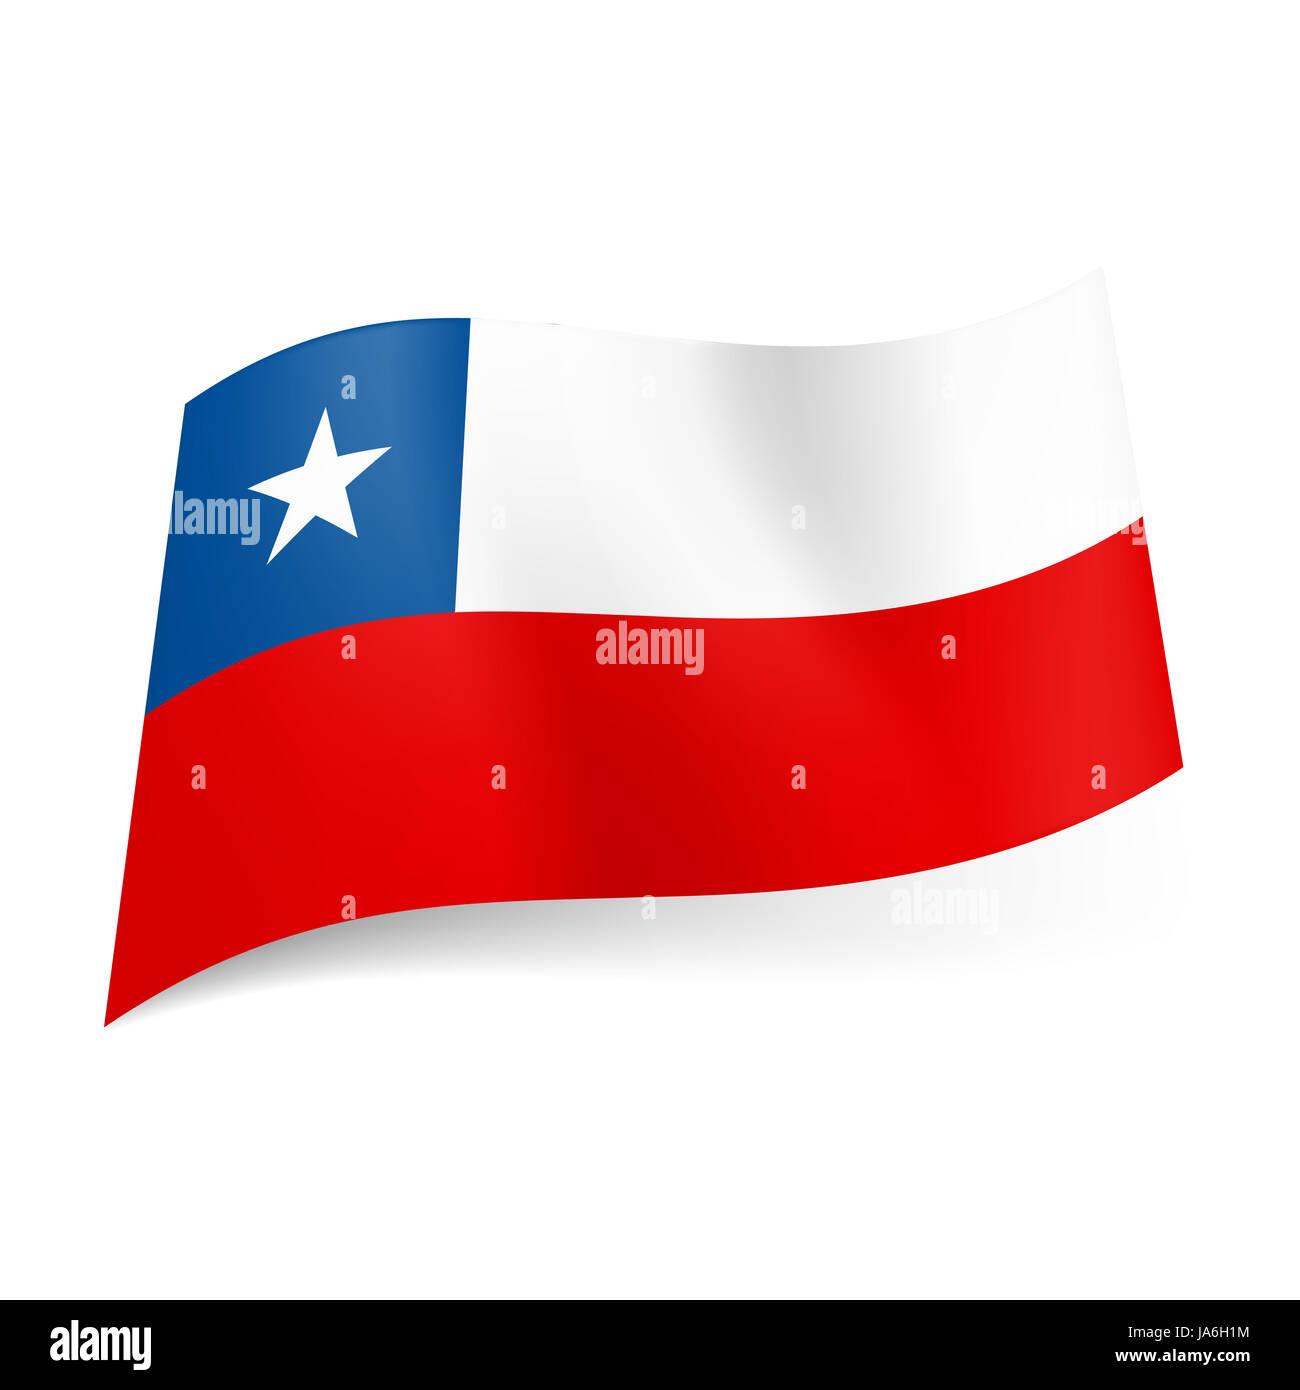 Bandiera nazionale del Cile: disparità di strisce bianche e rosse, quadrato  blu con stella bianca sulla striscia superiore Foto stock - Alamy